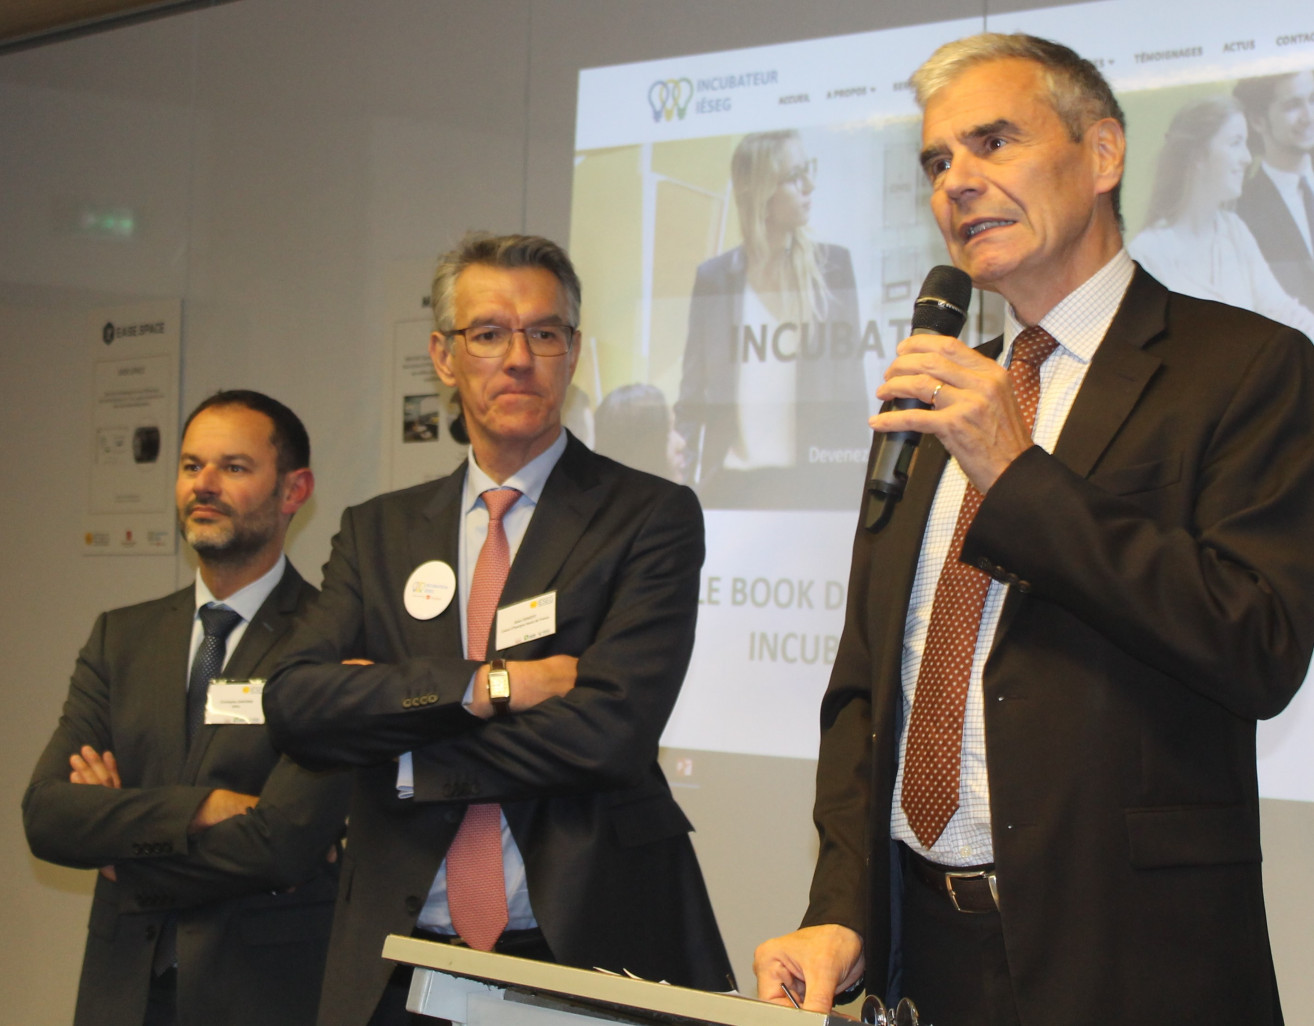 De gauche à droite, Christophe Garonne, directeur de l’incubateur de l’IÉSEG,   Alain Denizot, président du directoire de la Caisse d’Epargne Hauts de France, et Jean-Philippe Ammeux.